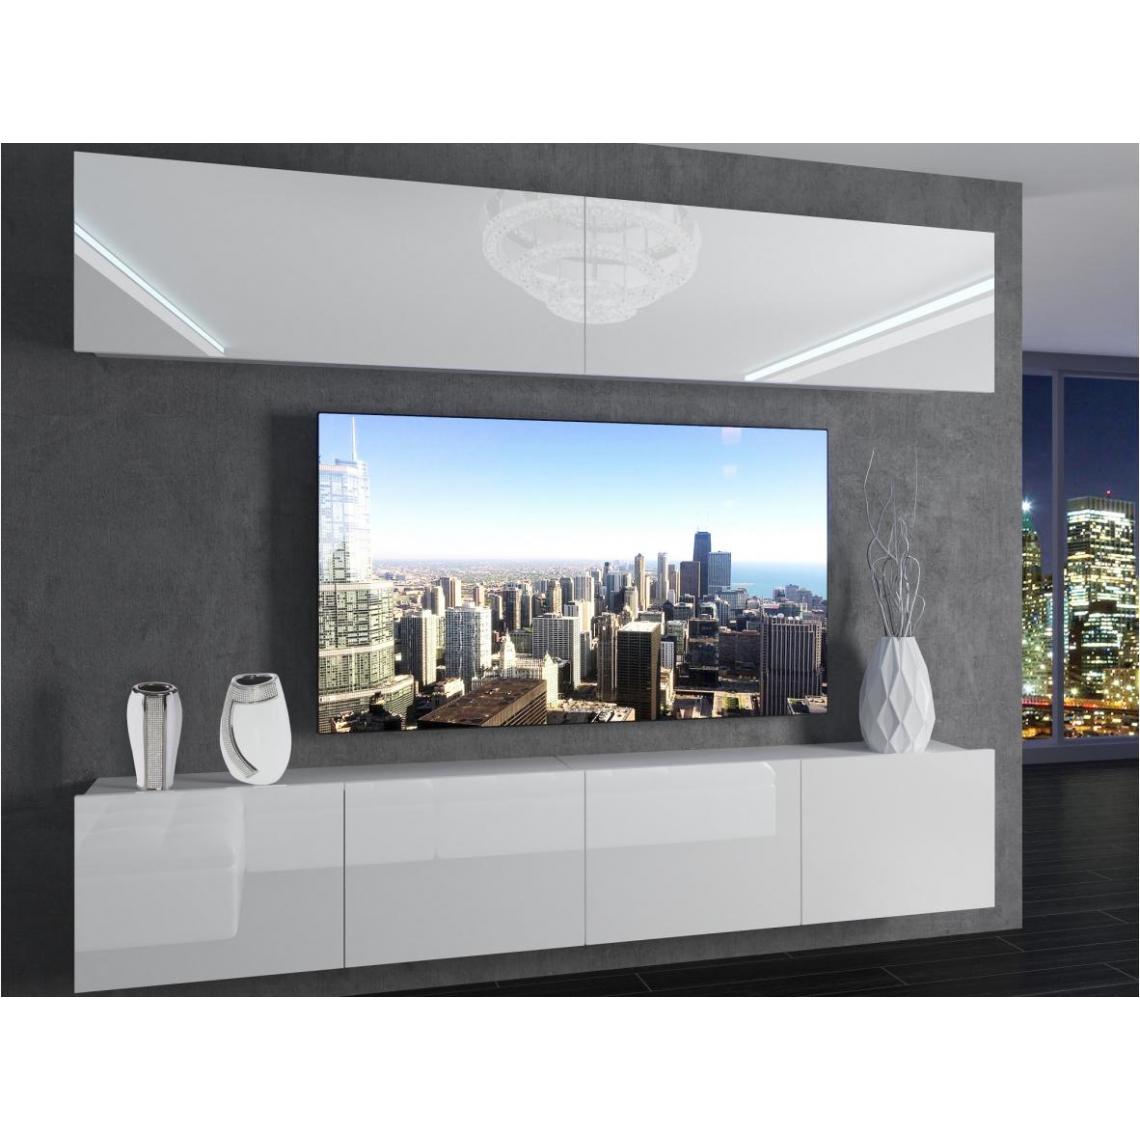 Hucoco - MORRIE - Ensemble meubles TV - Unité murale largeur 200 cm - Mur TV à suspendre finition gloss - Sans LED - Blanc - Meubles TV, Hi-Fi